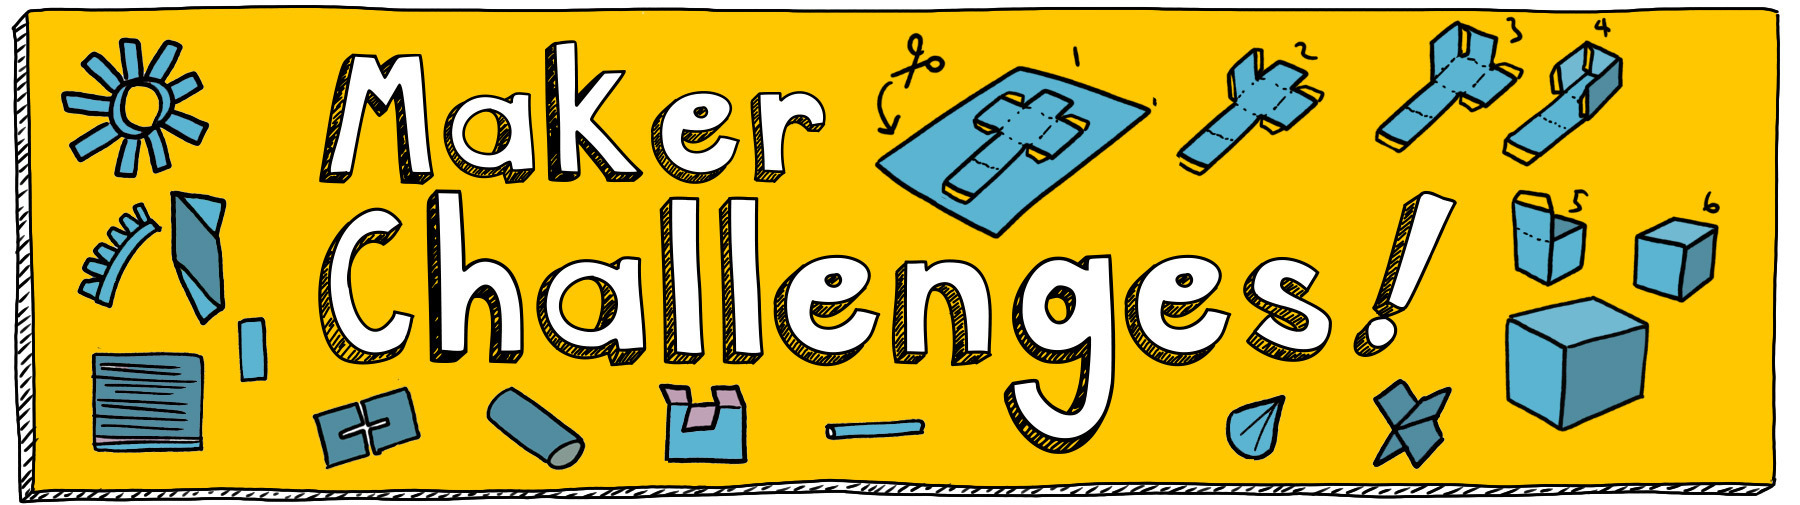 Maker challenges